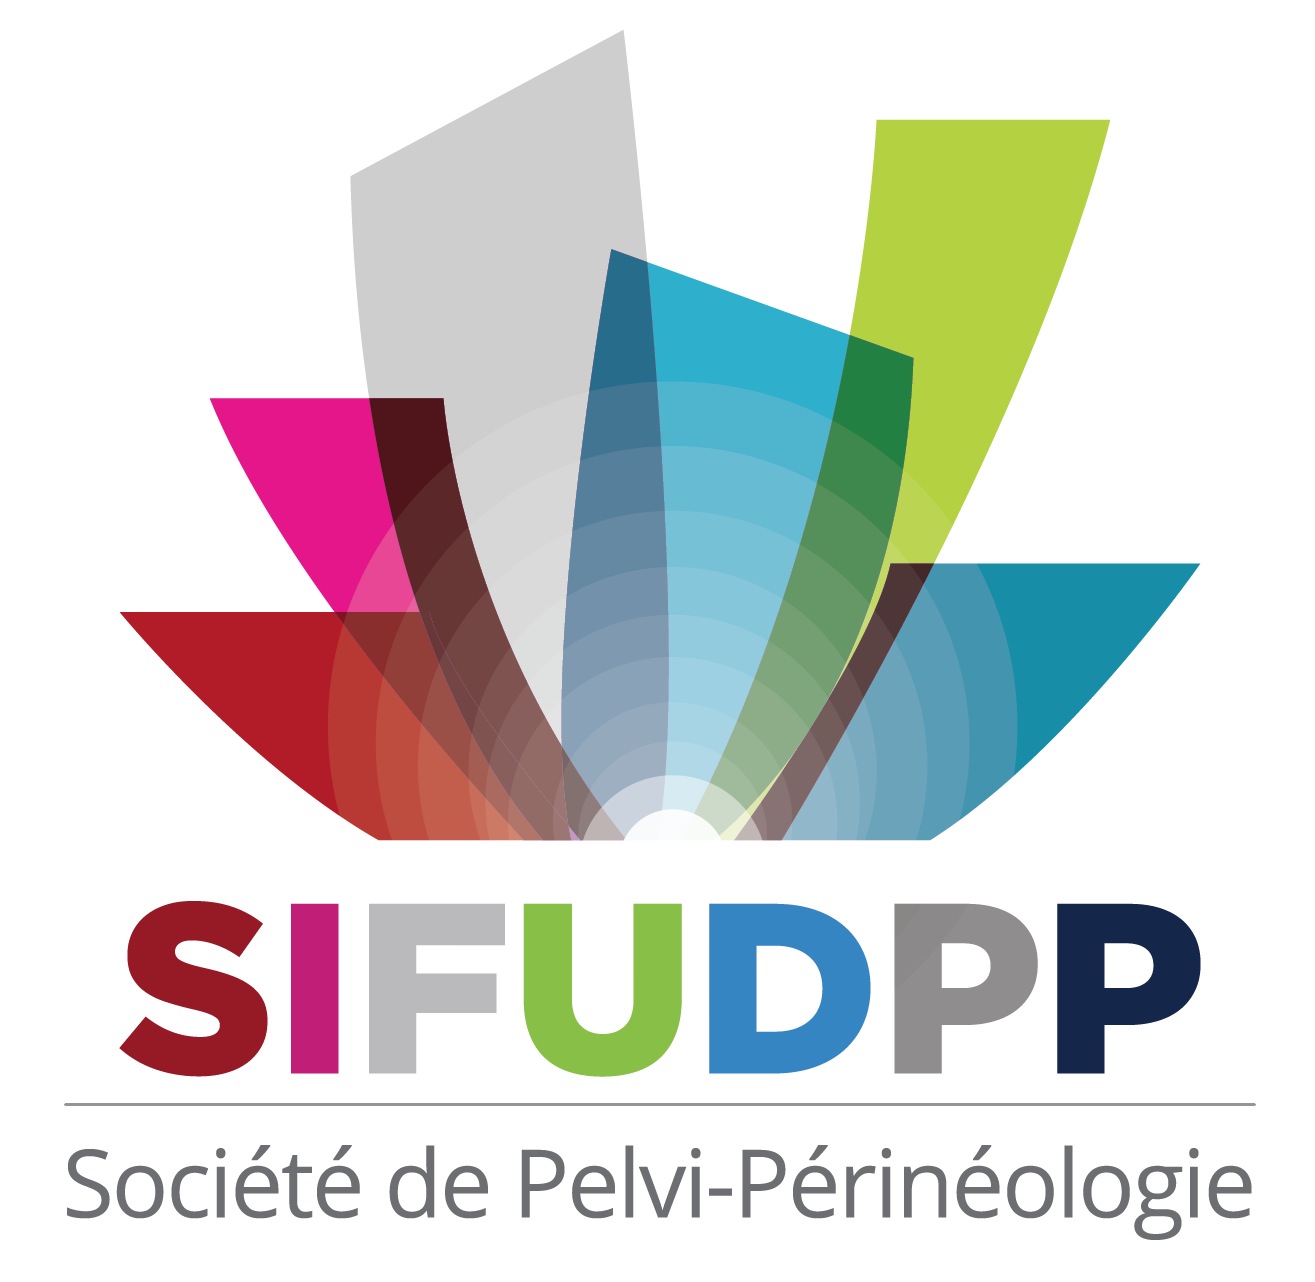 SIFUD-PP Bruxelles 2015 : Quelle stratégie chirurgicale ? Débats interactifs autour de 2 cas cliniques.